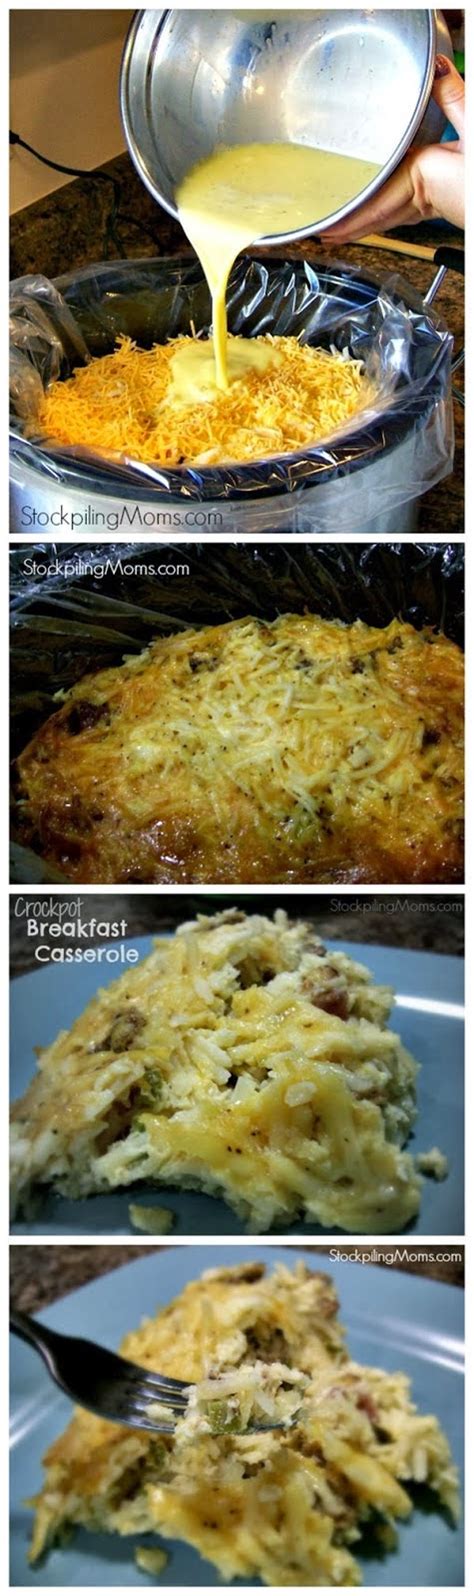 crockpot breakfast casserole recipeez blog